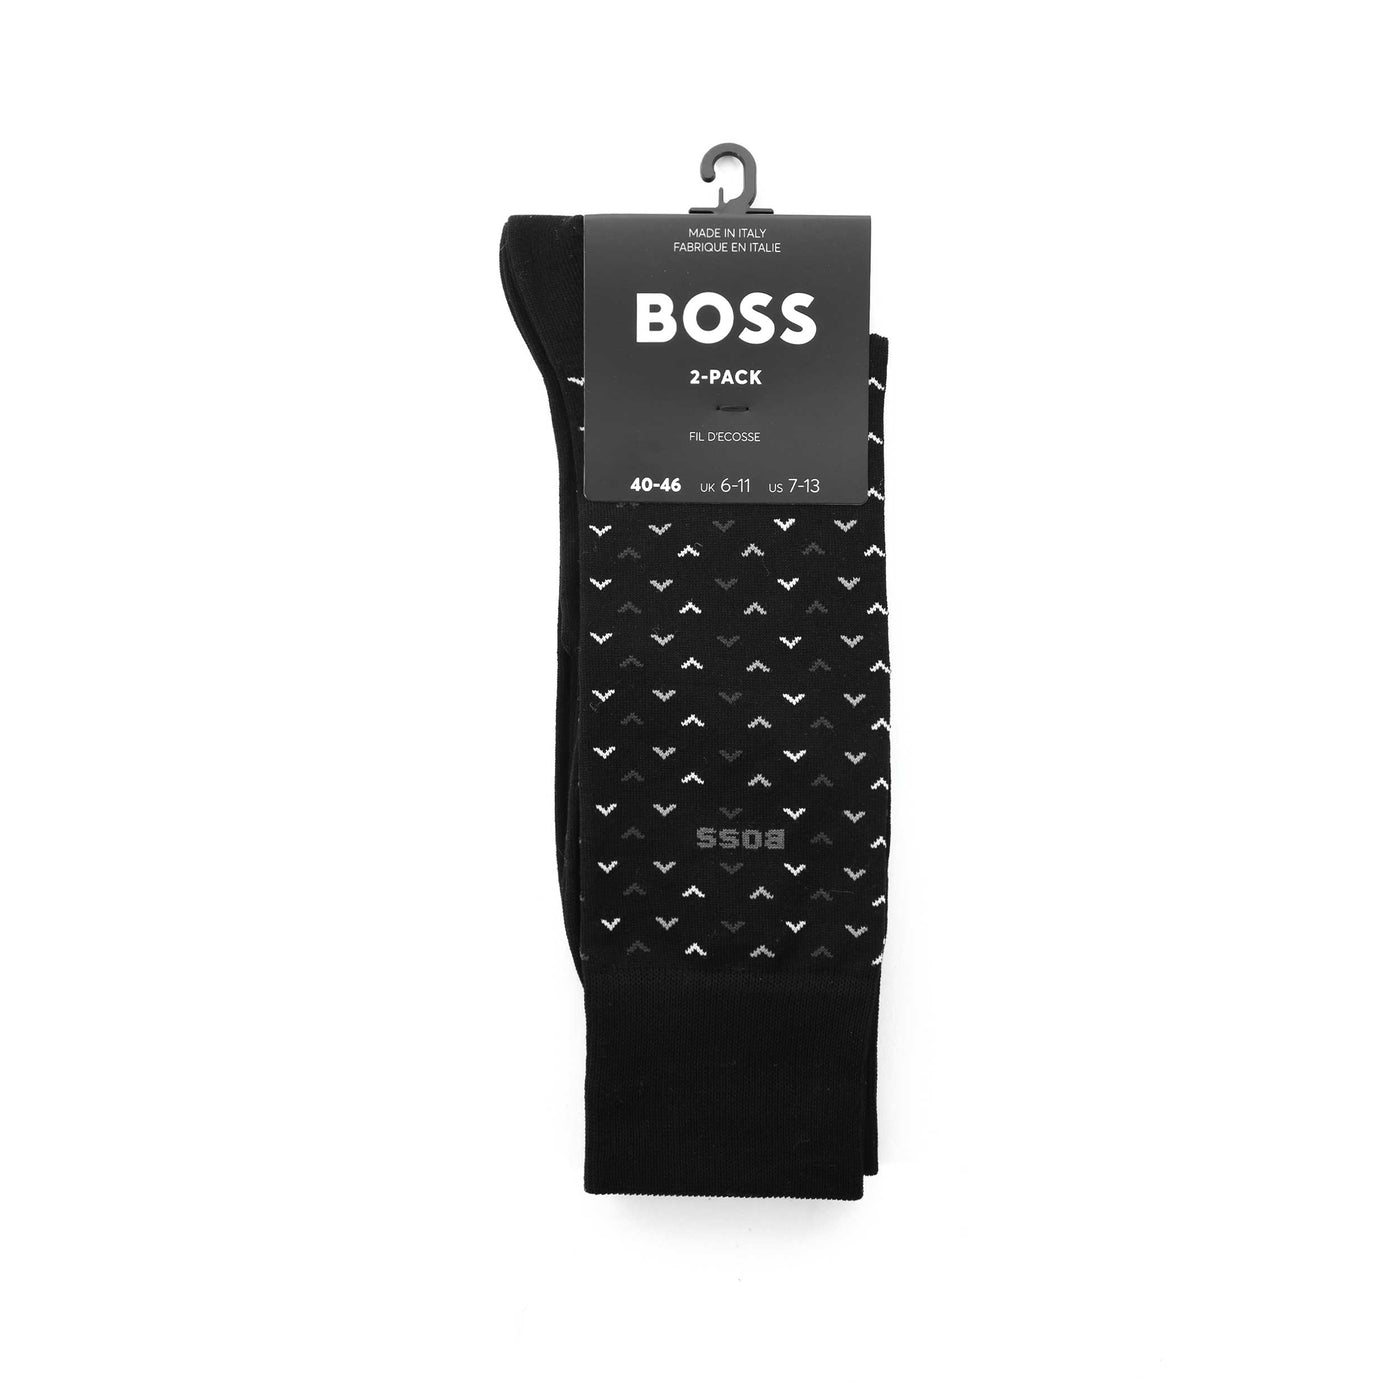 BOSS 2P RS Minipattern MC Sock in Black Pack